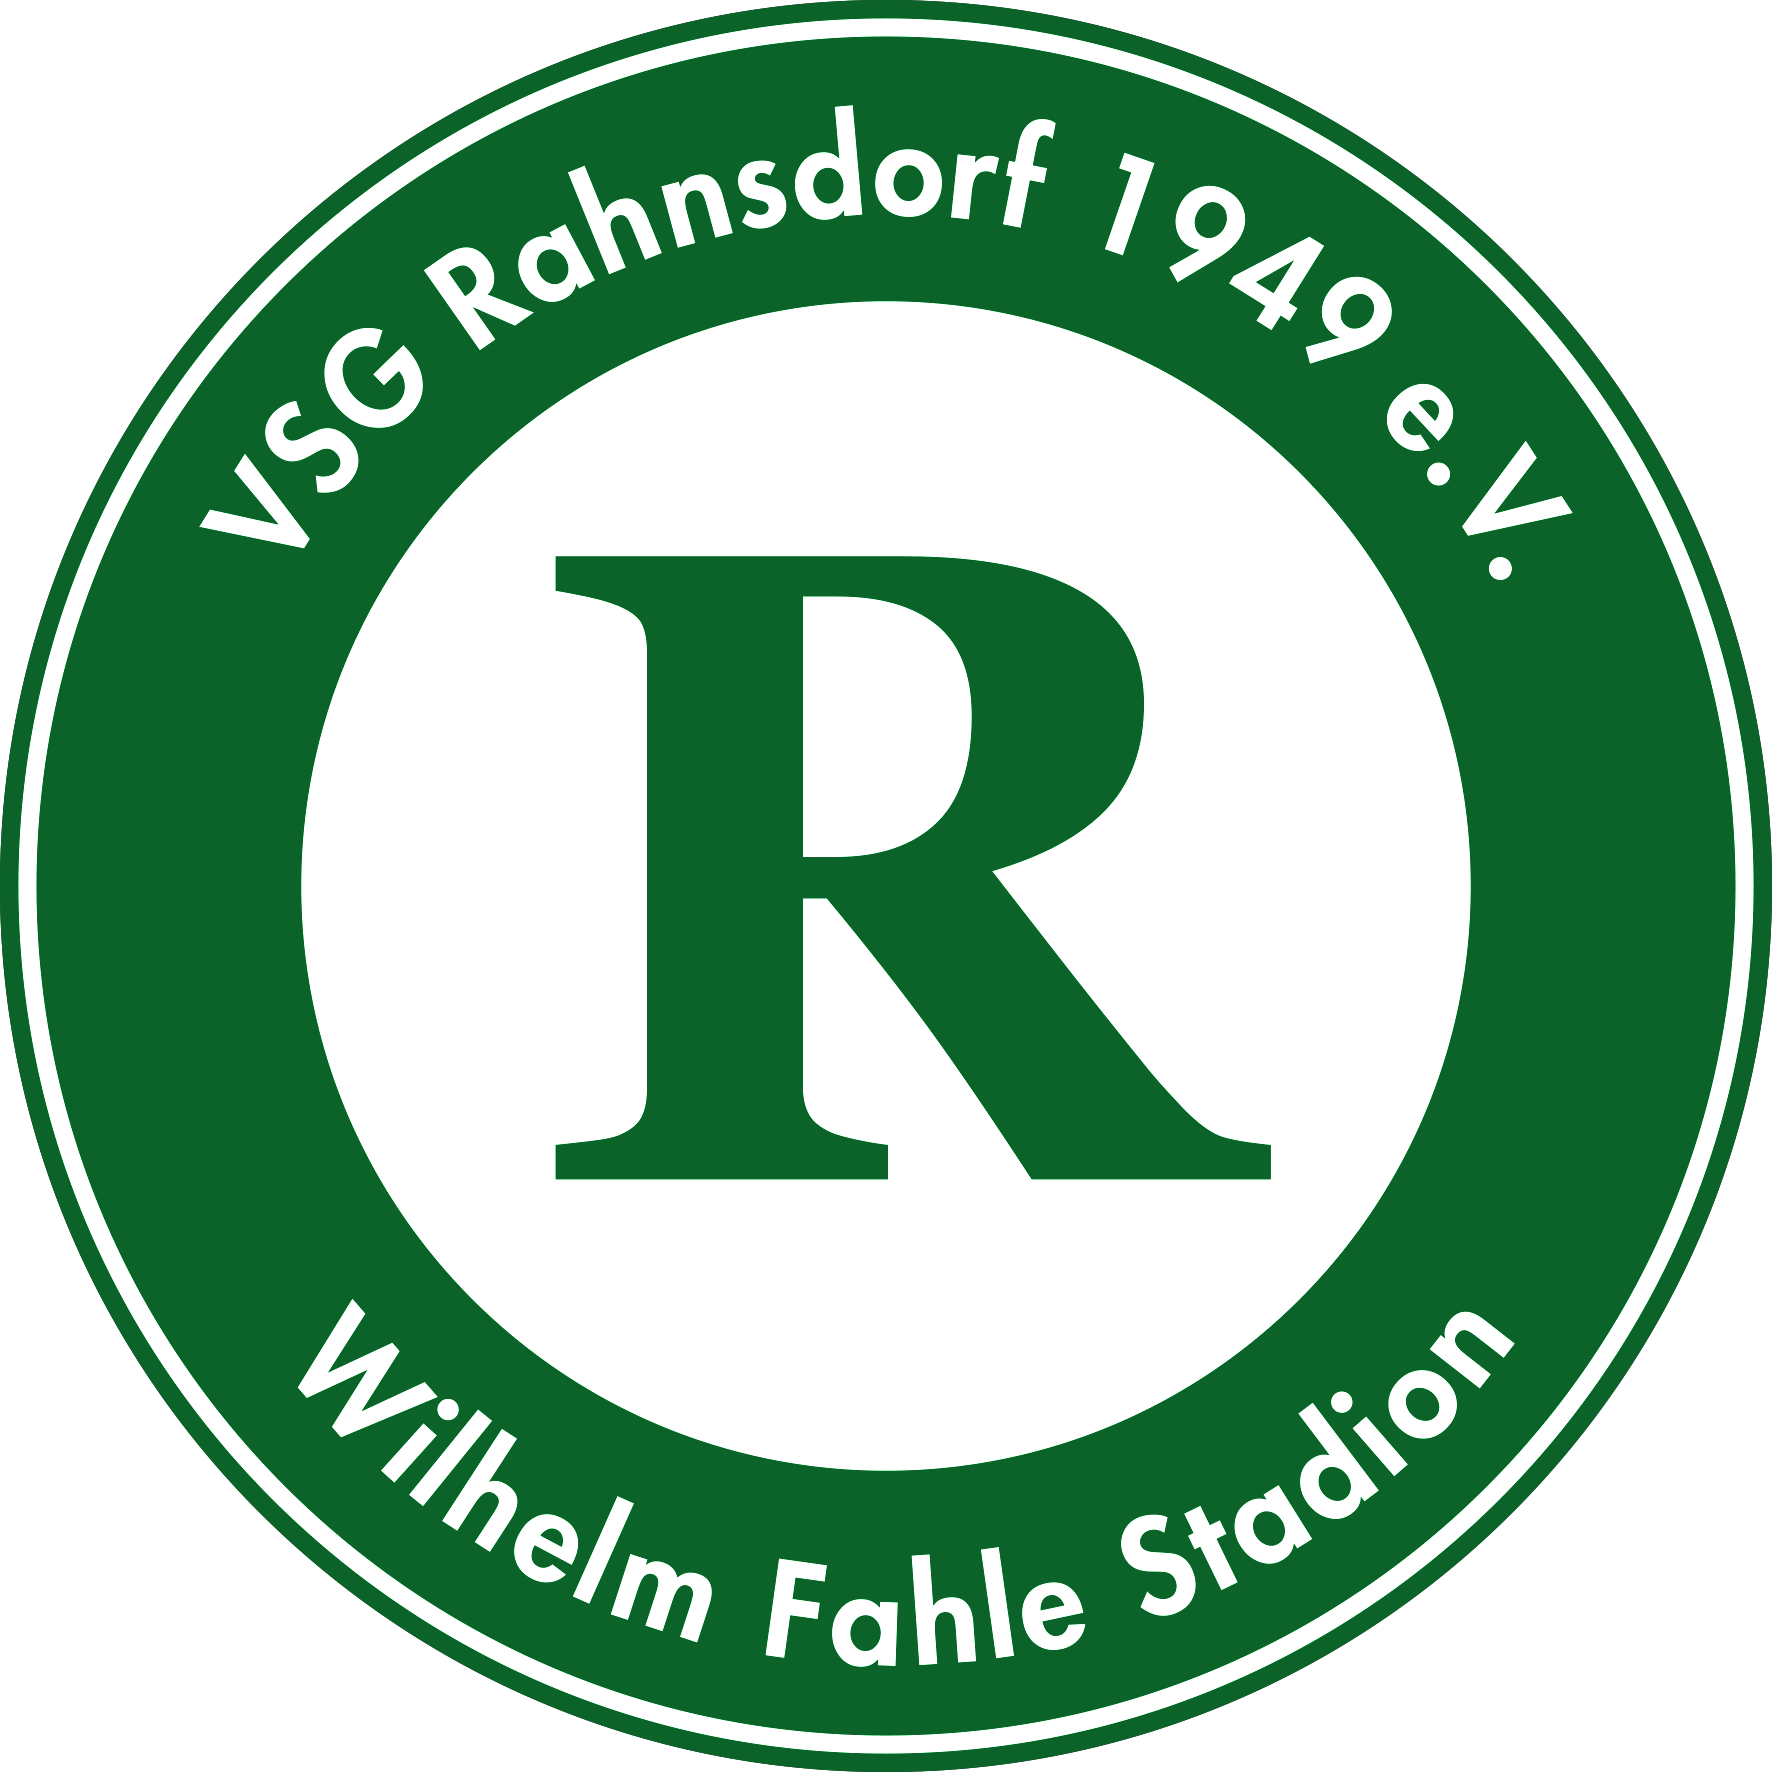 (c) Vsg-rahnsdorf-49.de